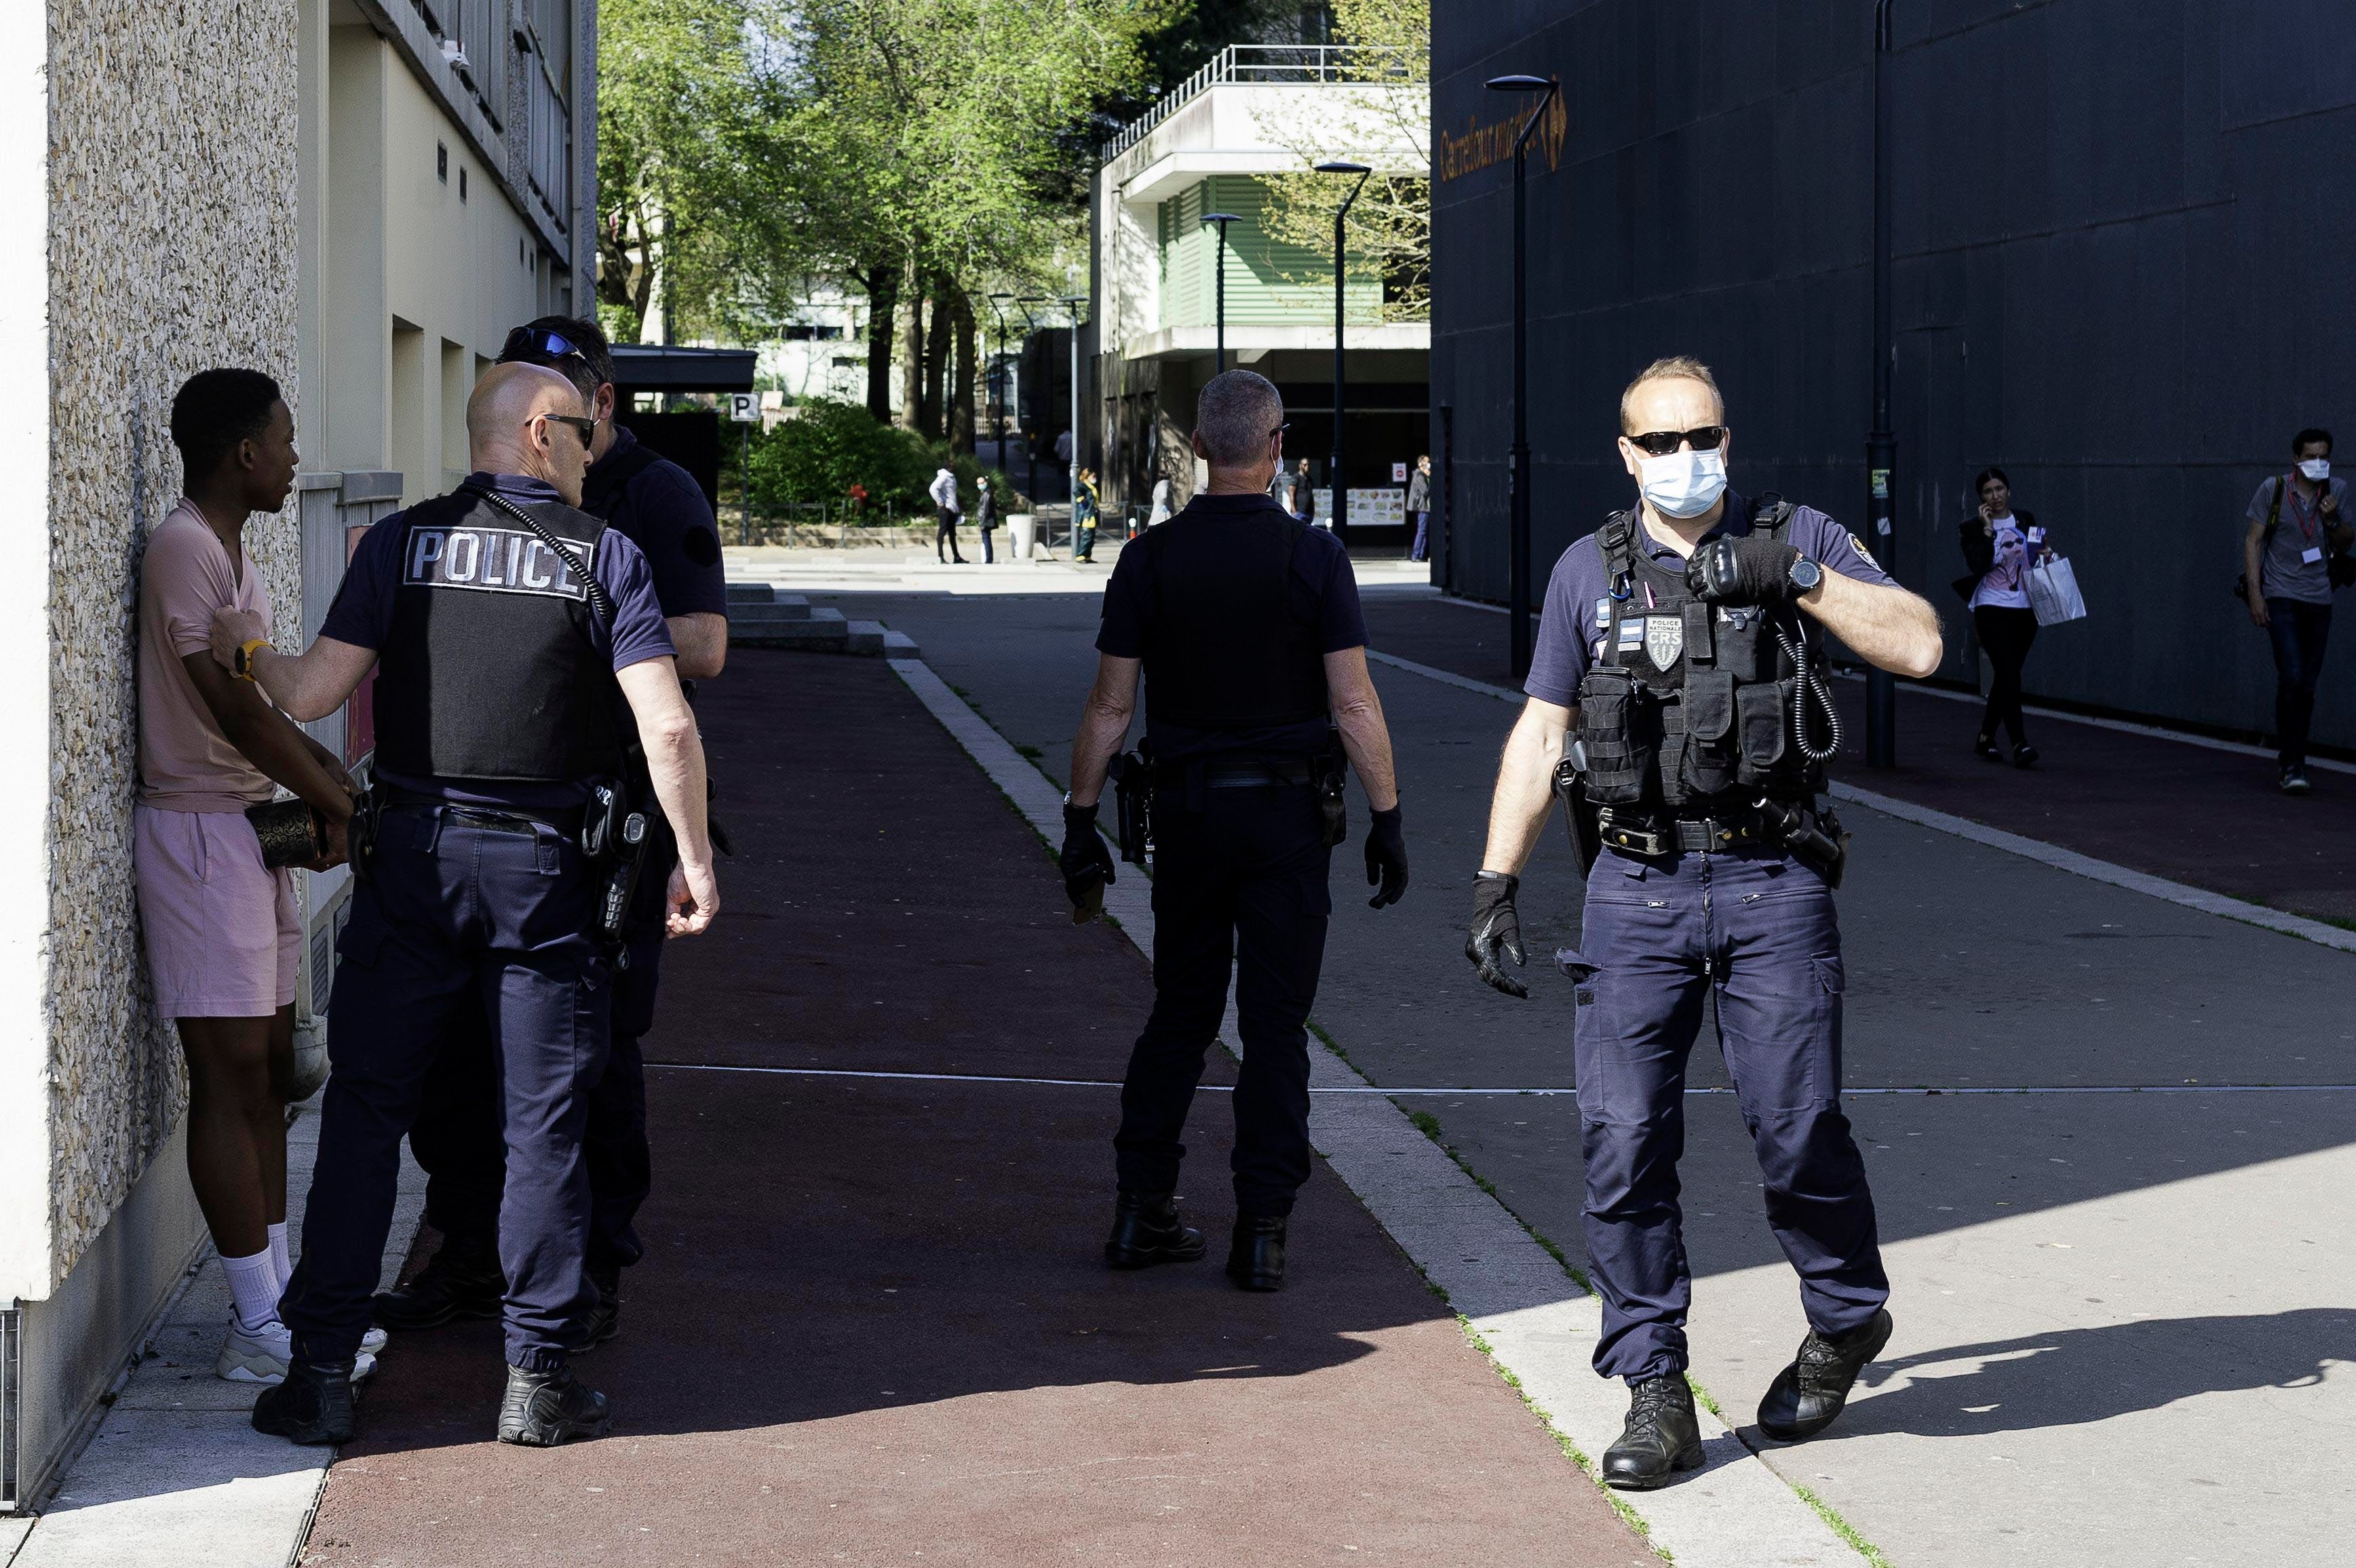 Des agents de police vérifient les documents d'identité des passants pendant le confinement à Rennes, France. 11 avril 2020.